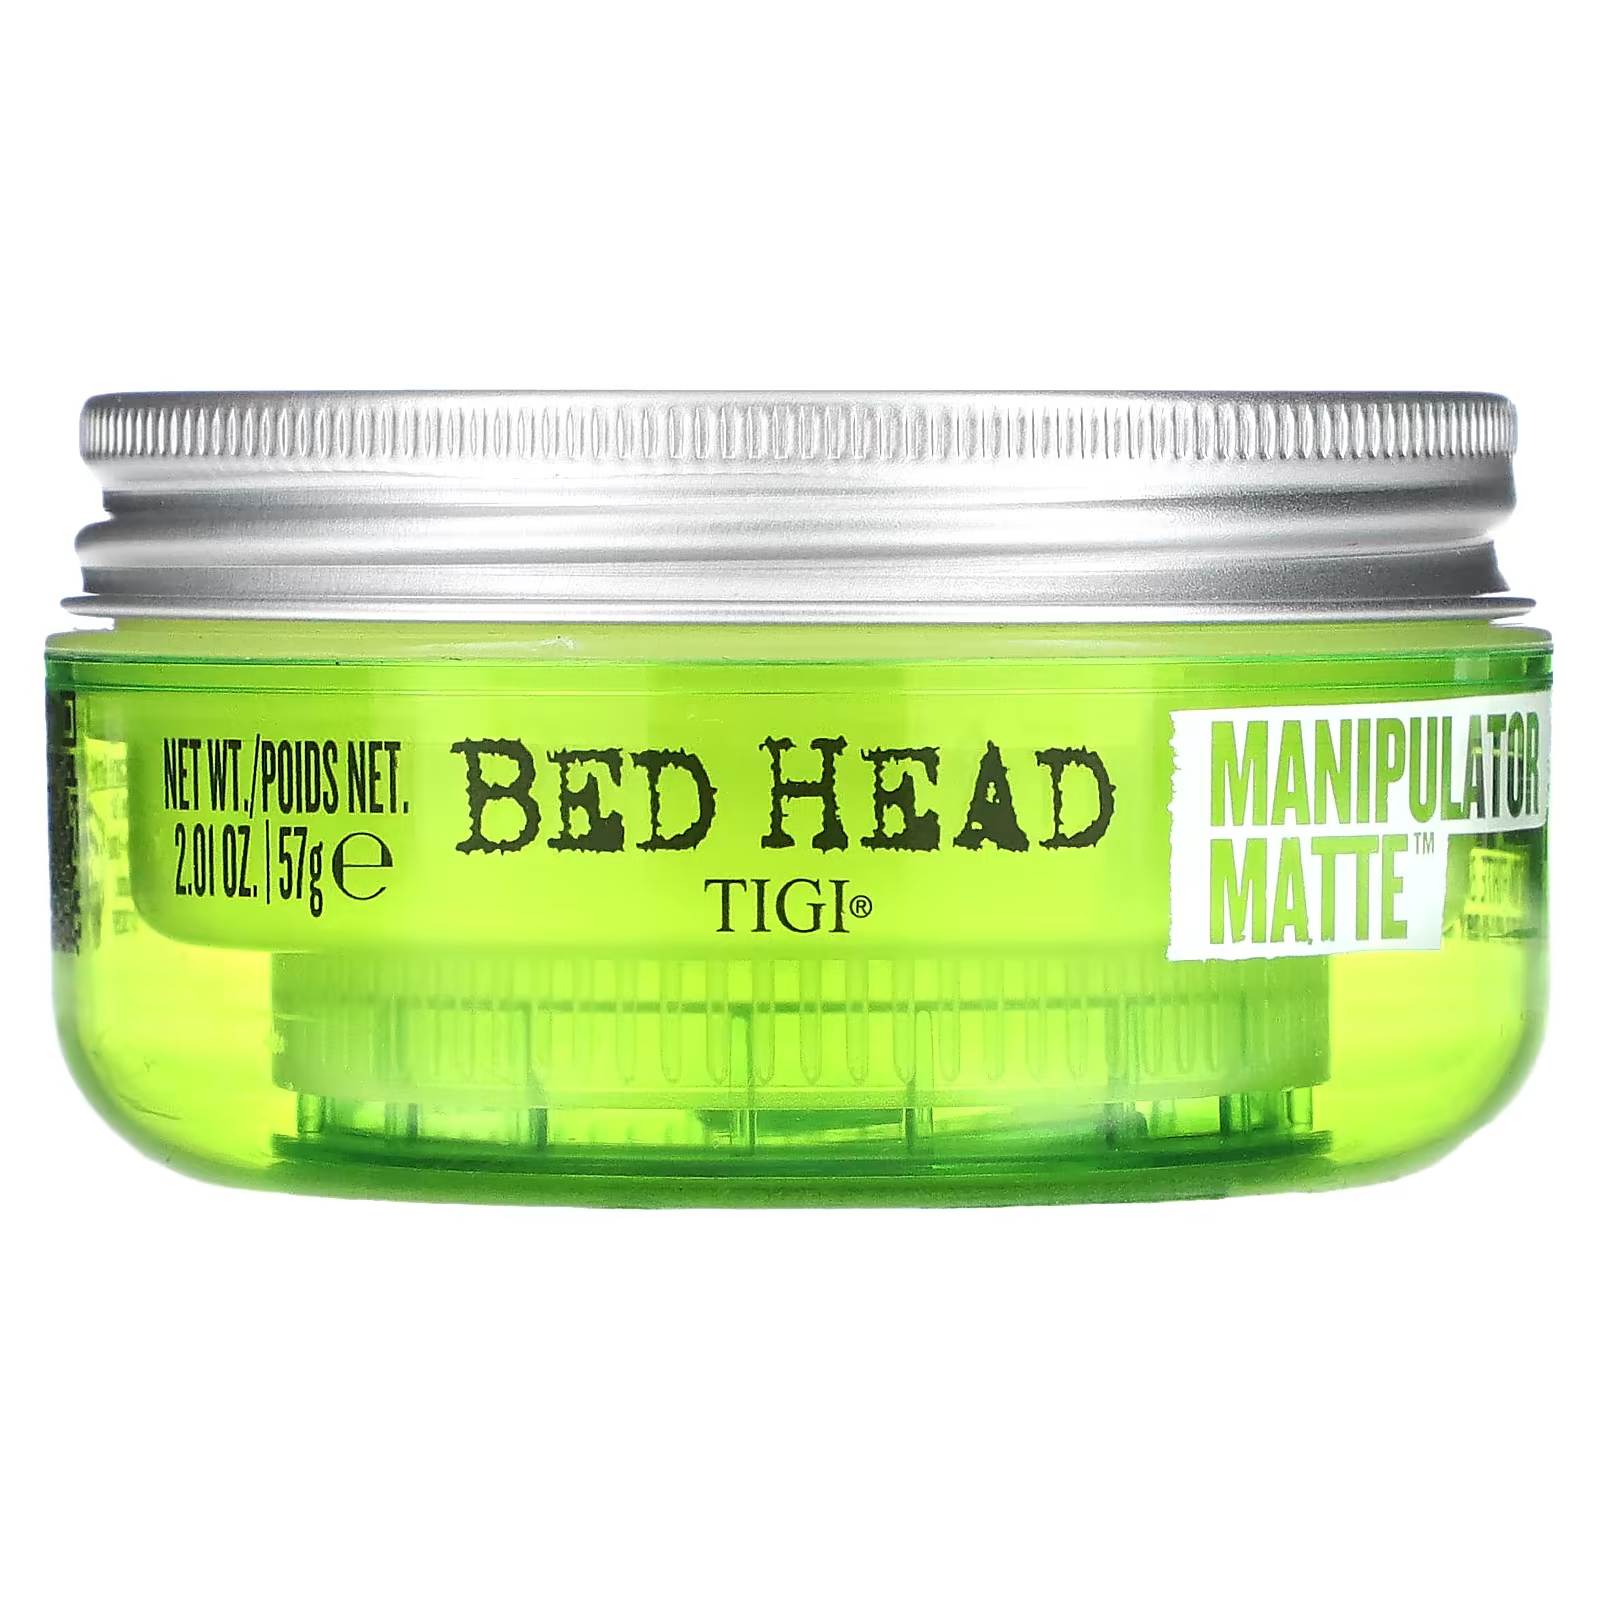 Матовый манипулятор TIGI Bed Head Manipulator, 2,01 унции (57 г)